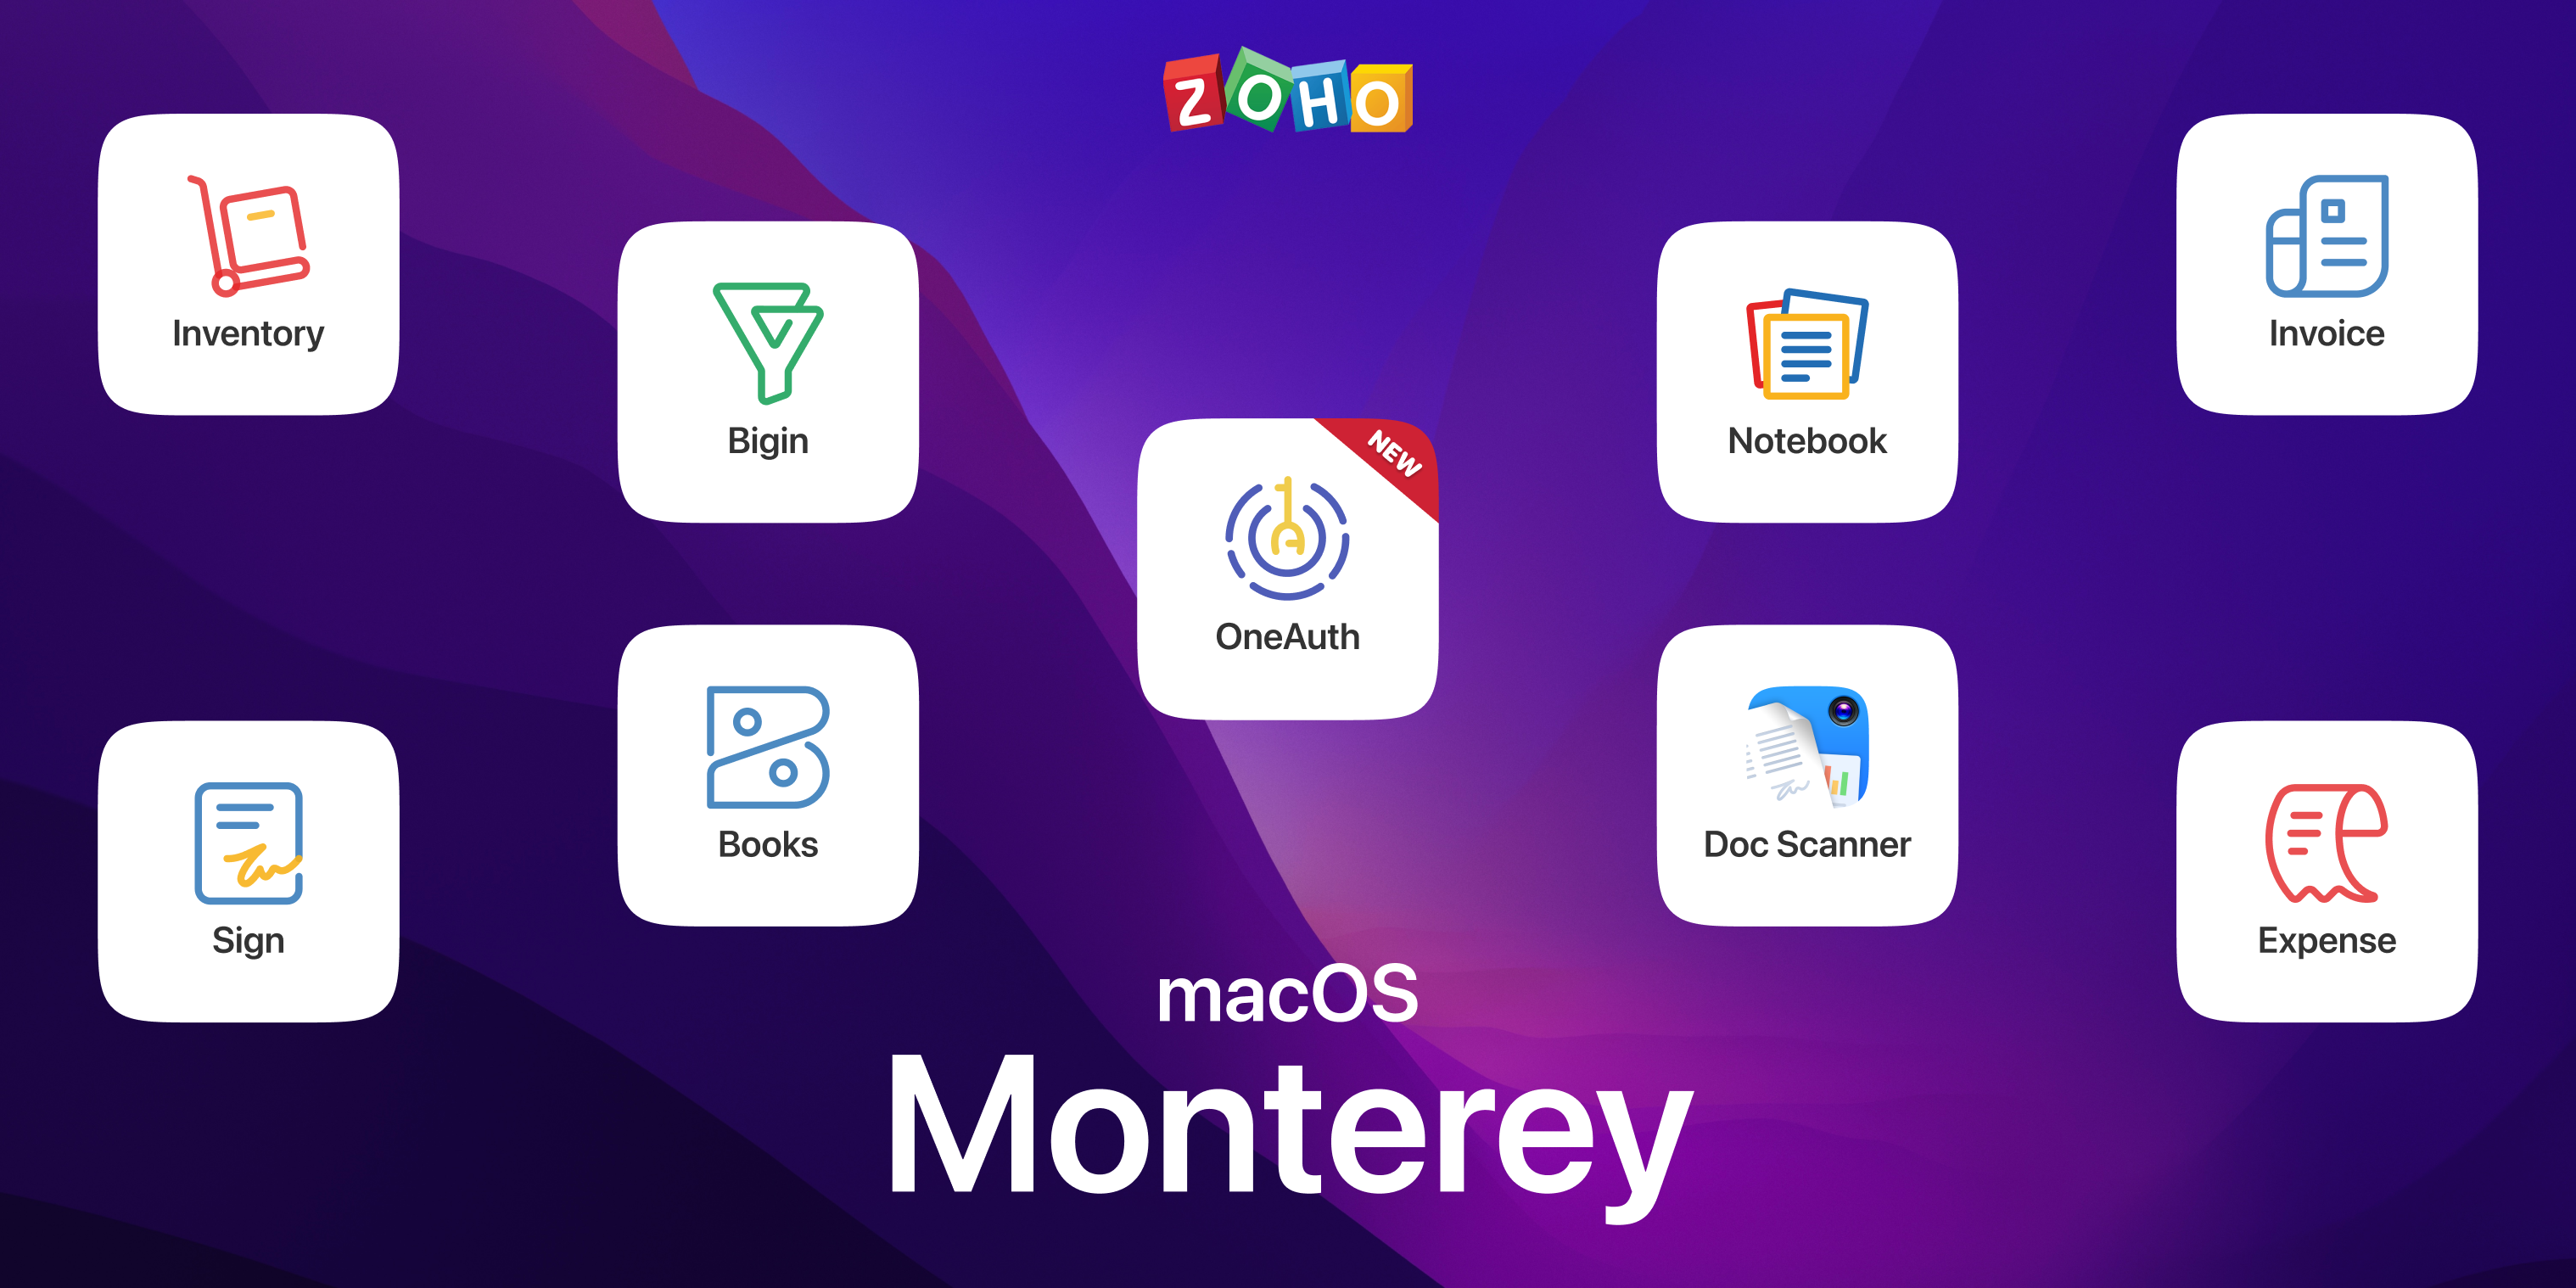 Viva la experiencia de macOS Monterey en las apps de Zoho